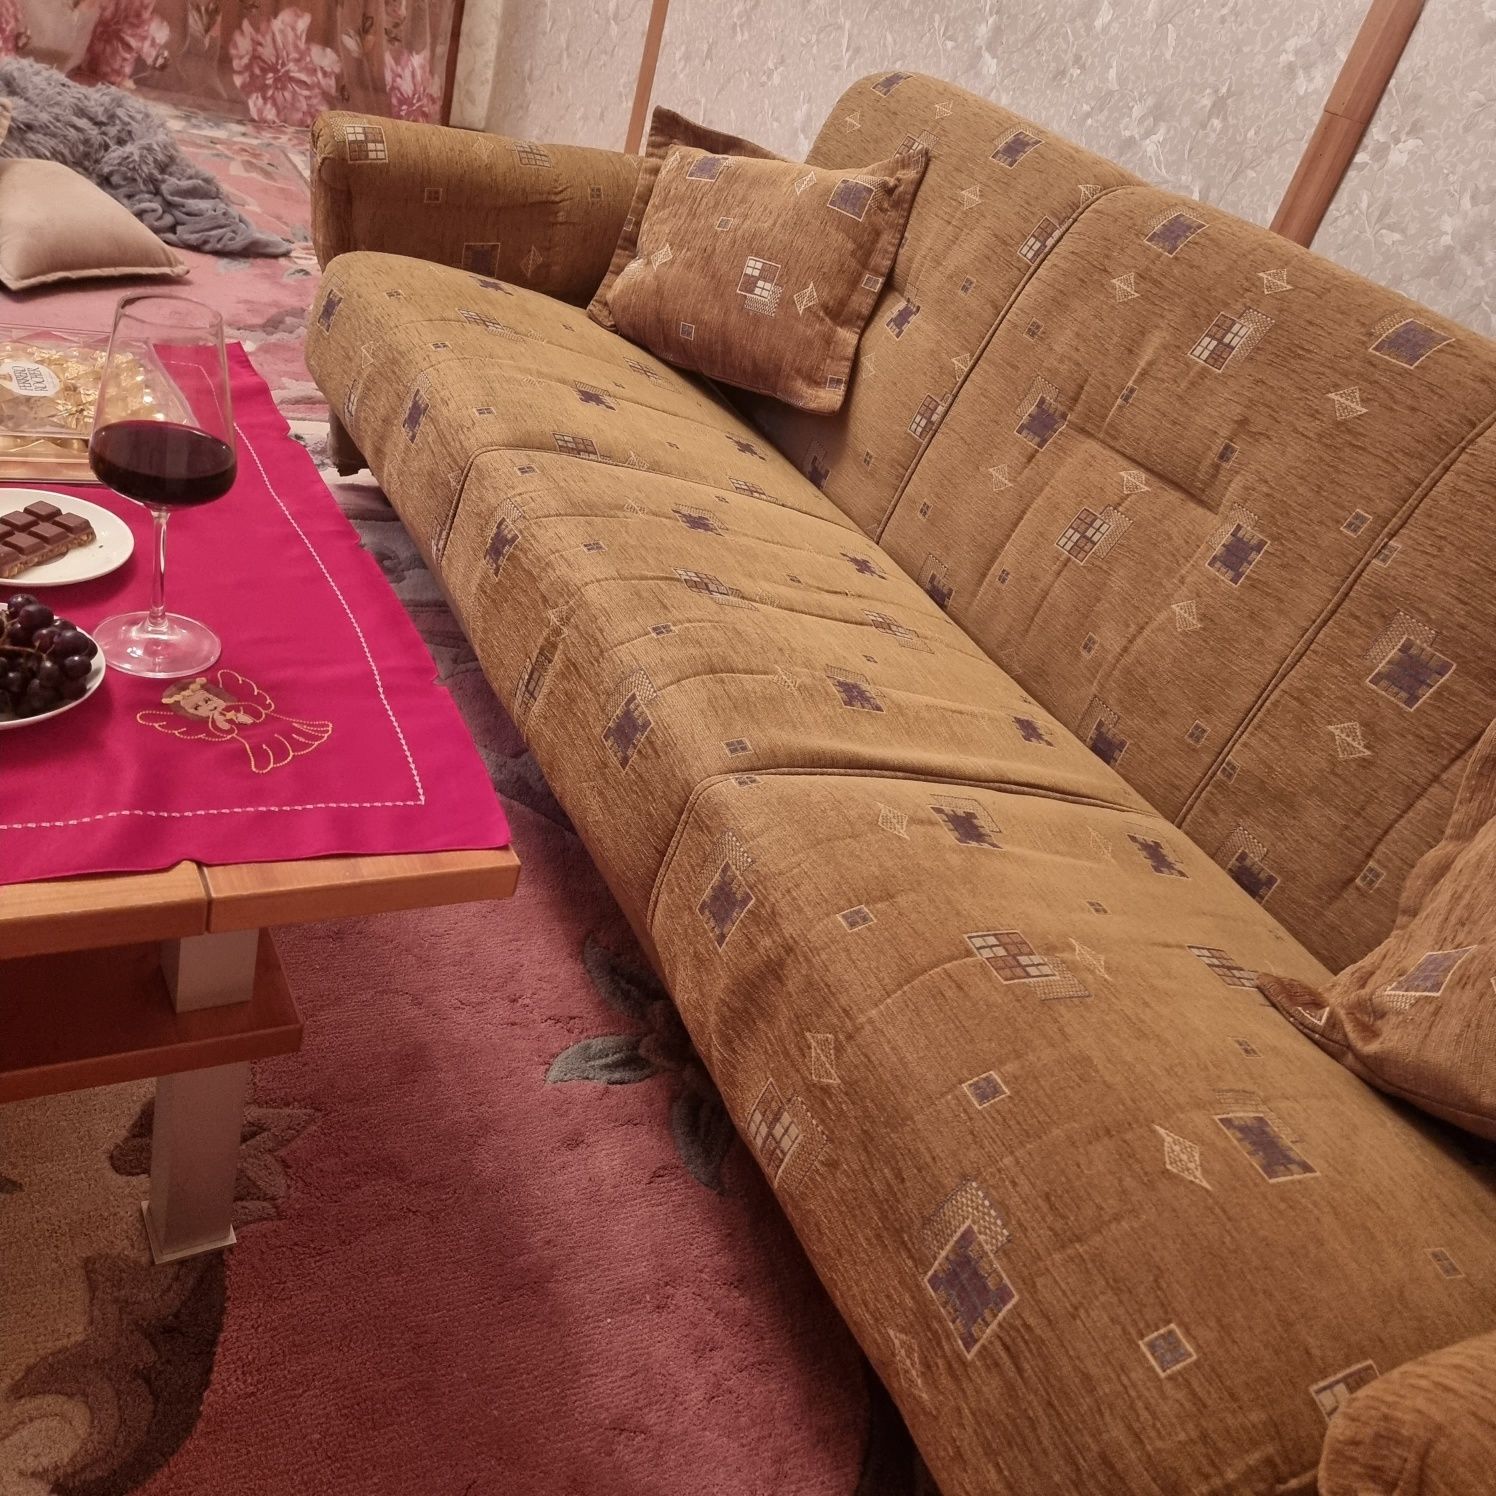 Продается диван в отличном состоянии